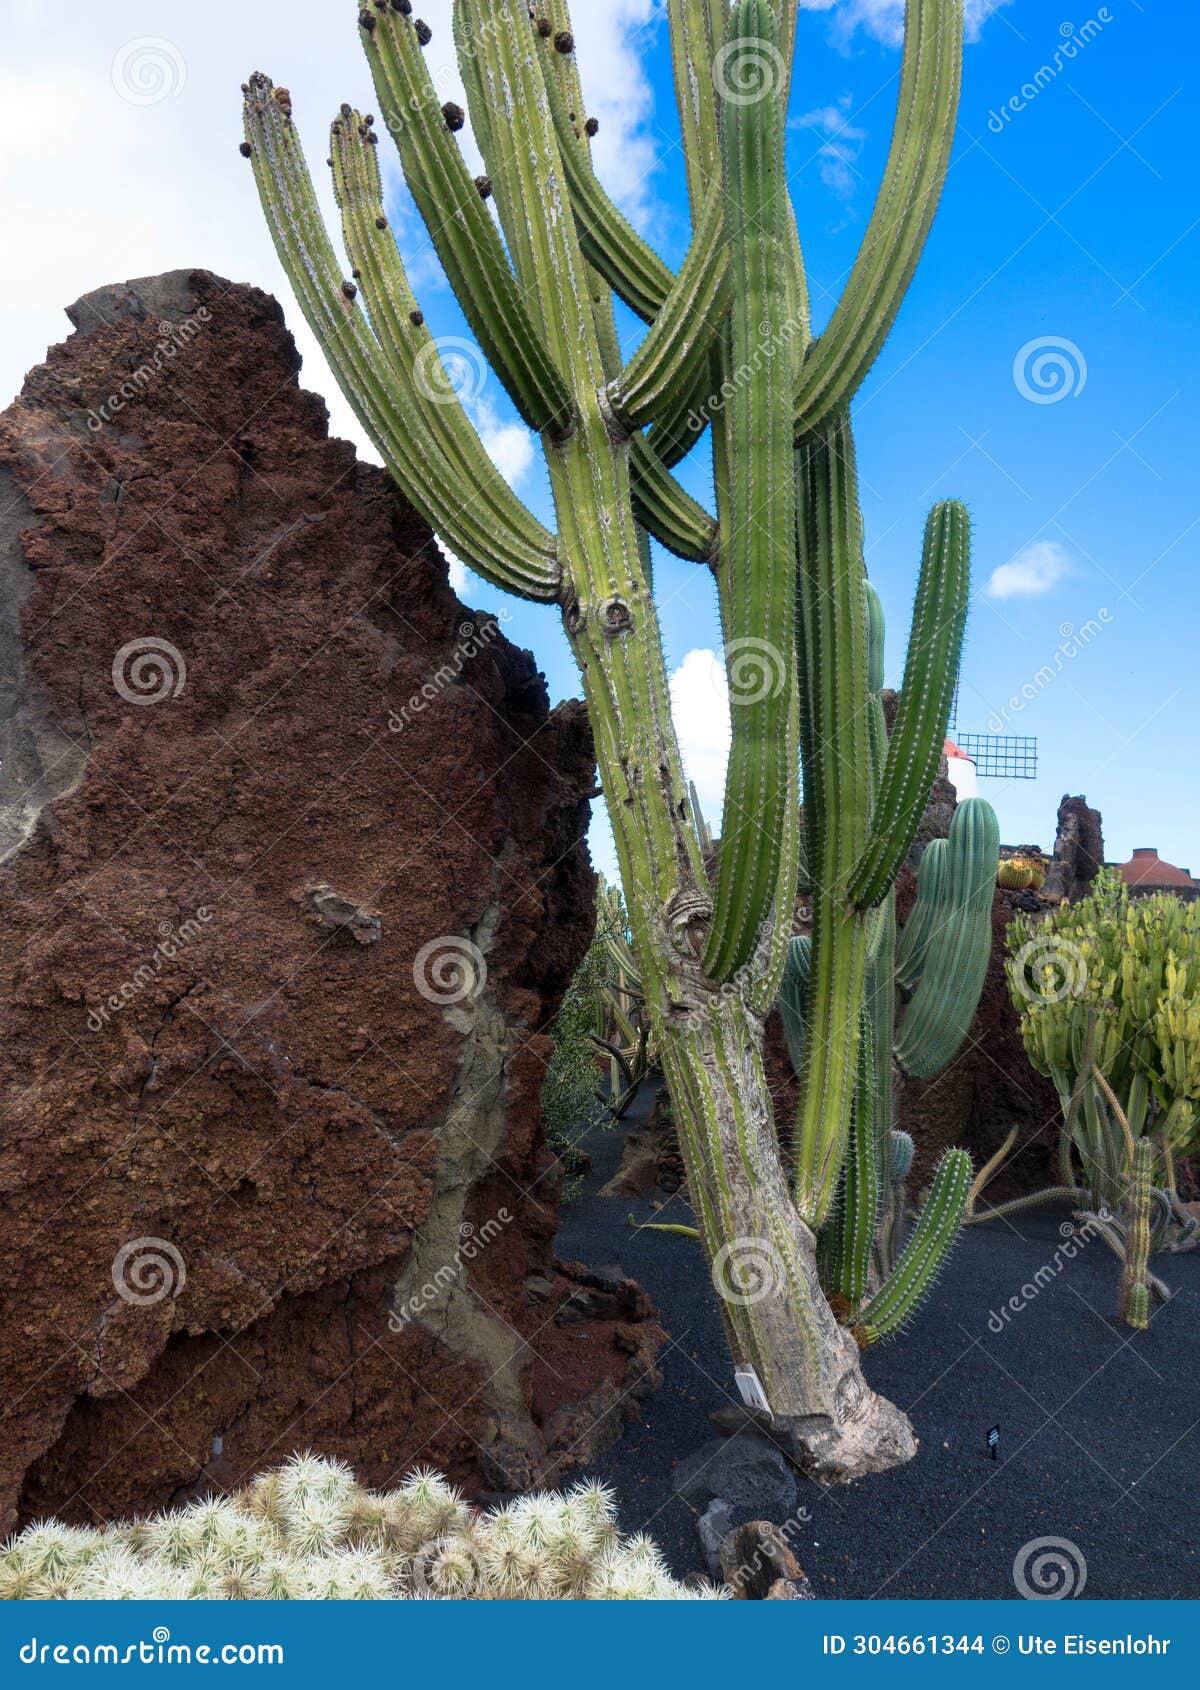 popular jardin de cactus, lanzarote, spain